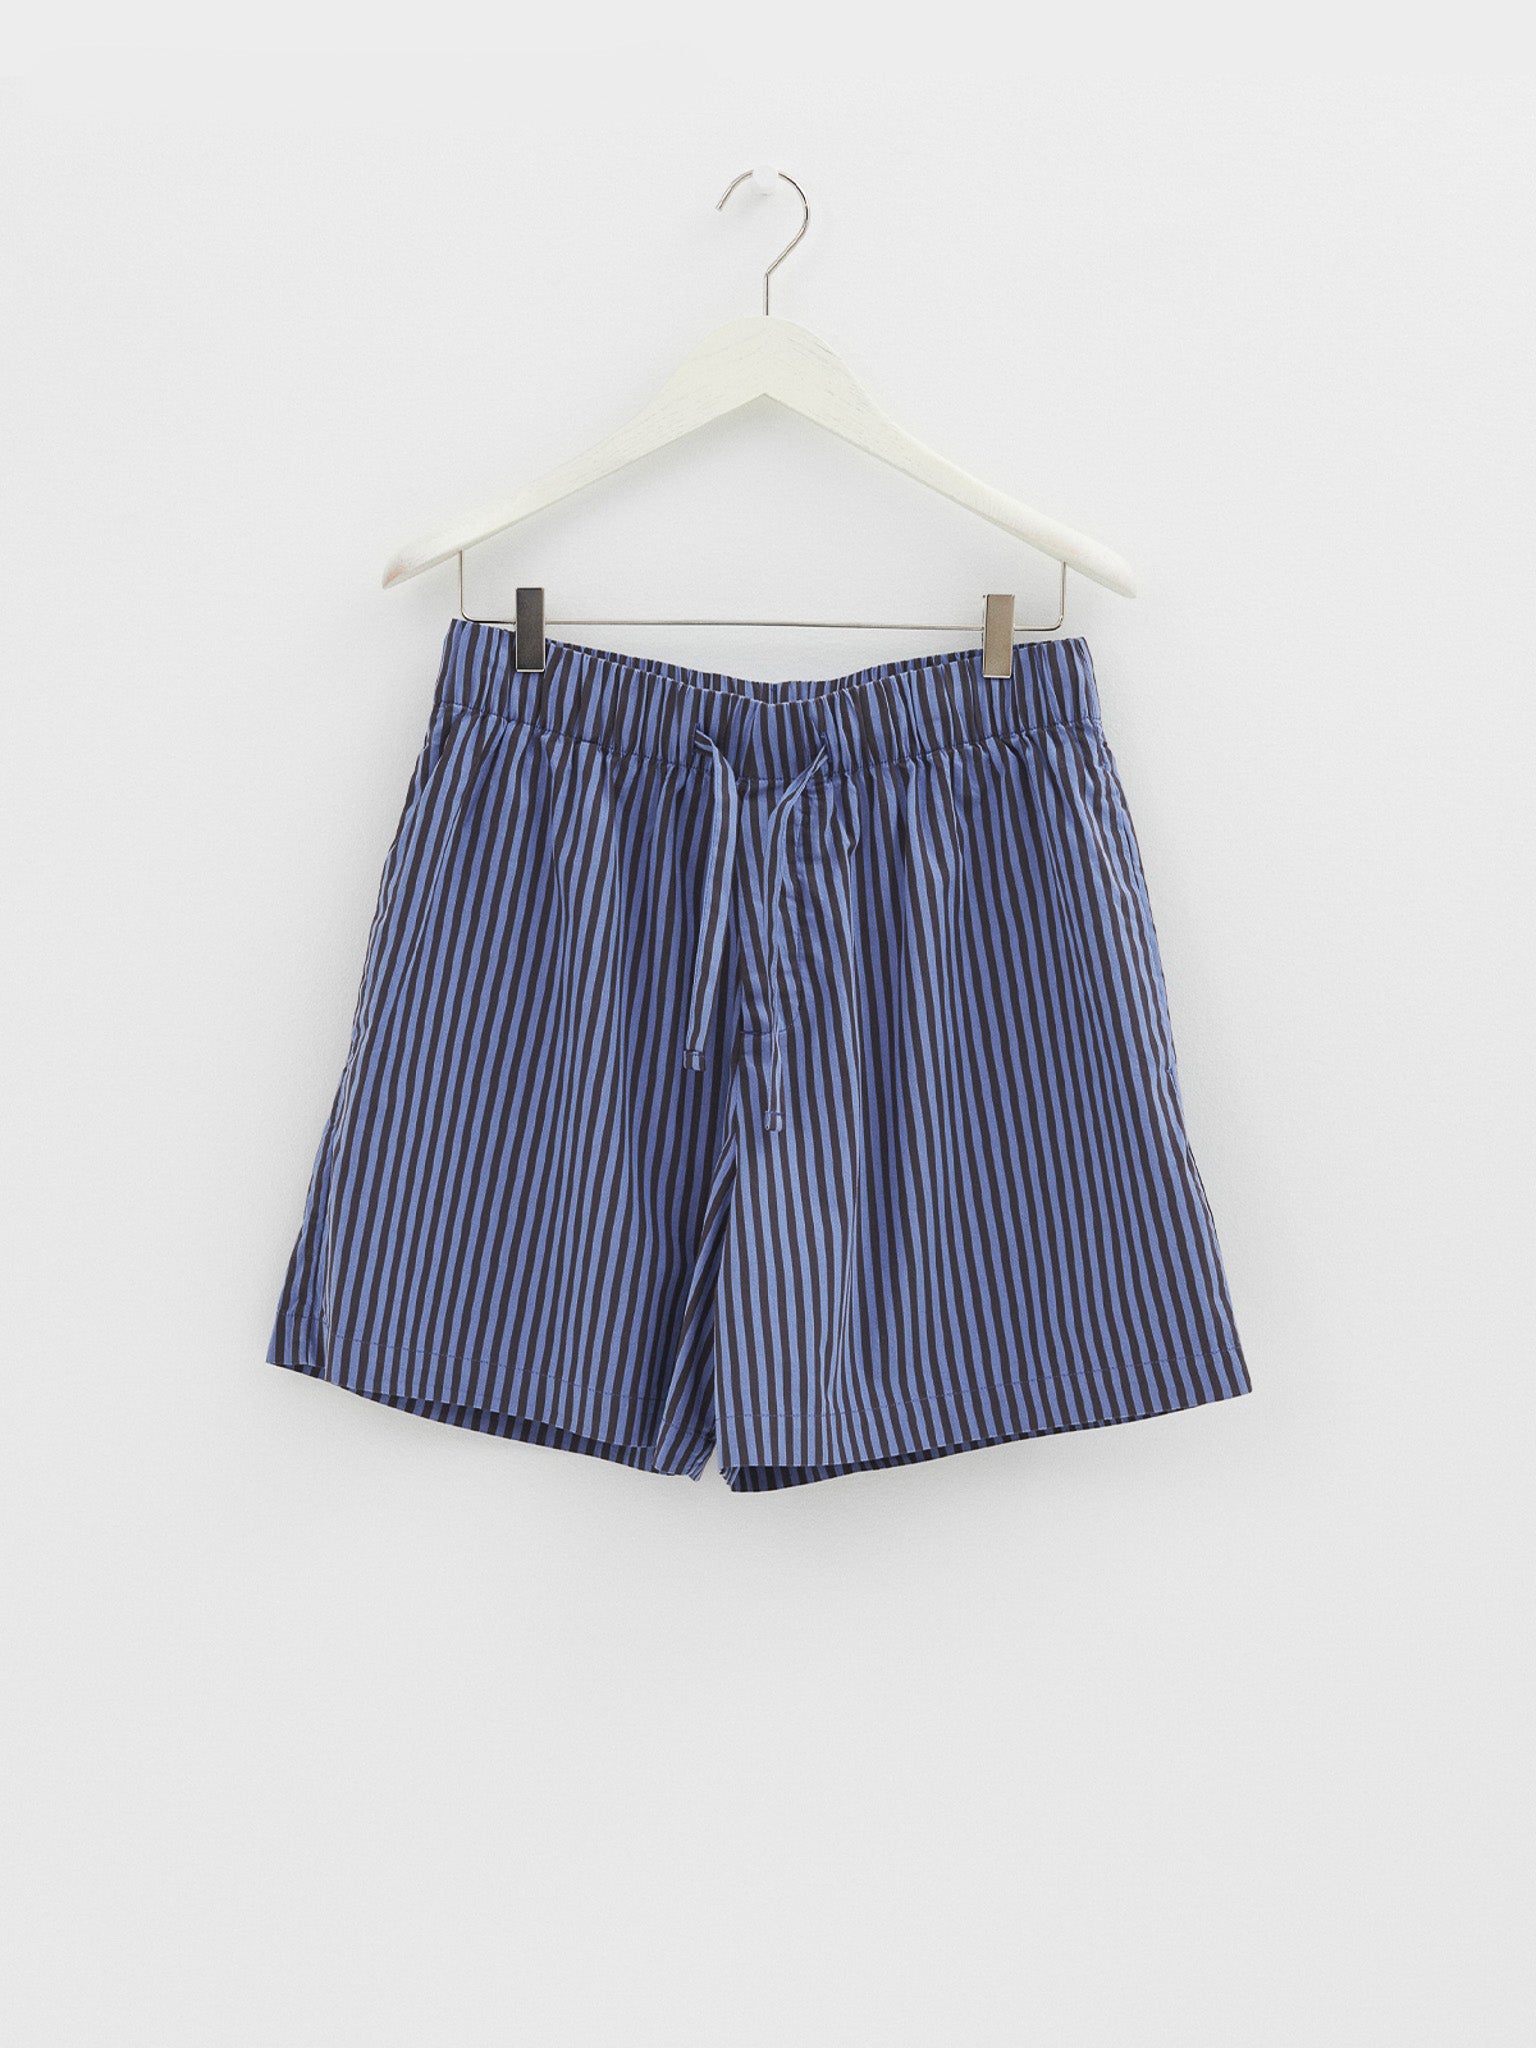 Tekla - Poplin Pyjamas Shorts in Verneuil Stripes